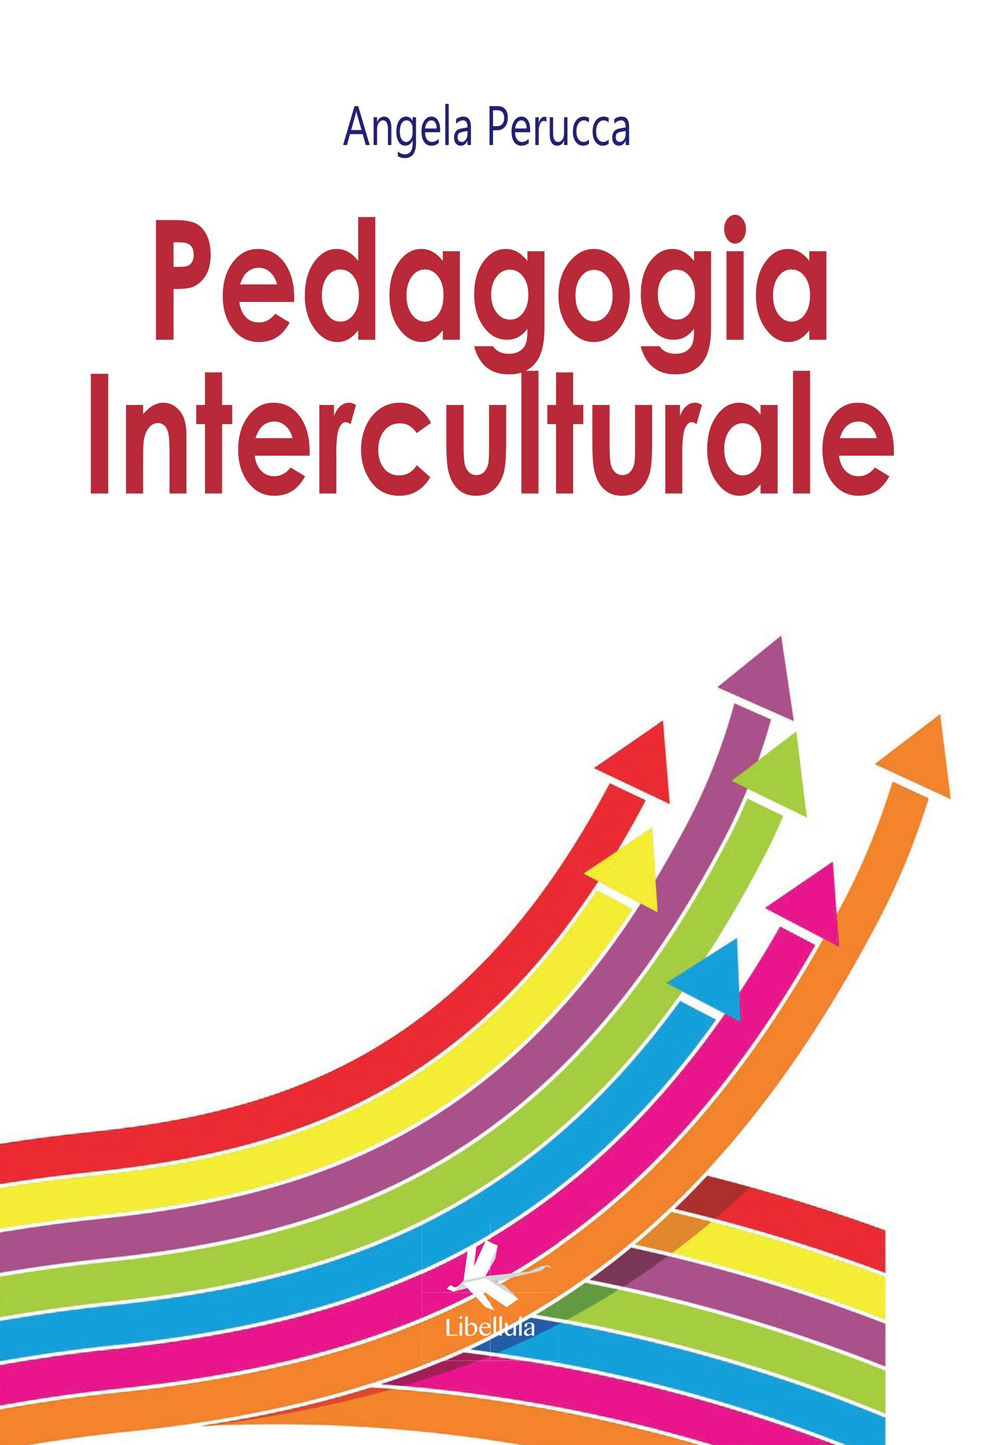 Image of Pedagogia interculturale